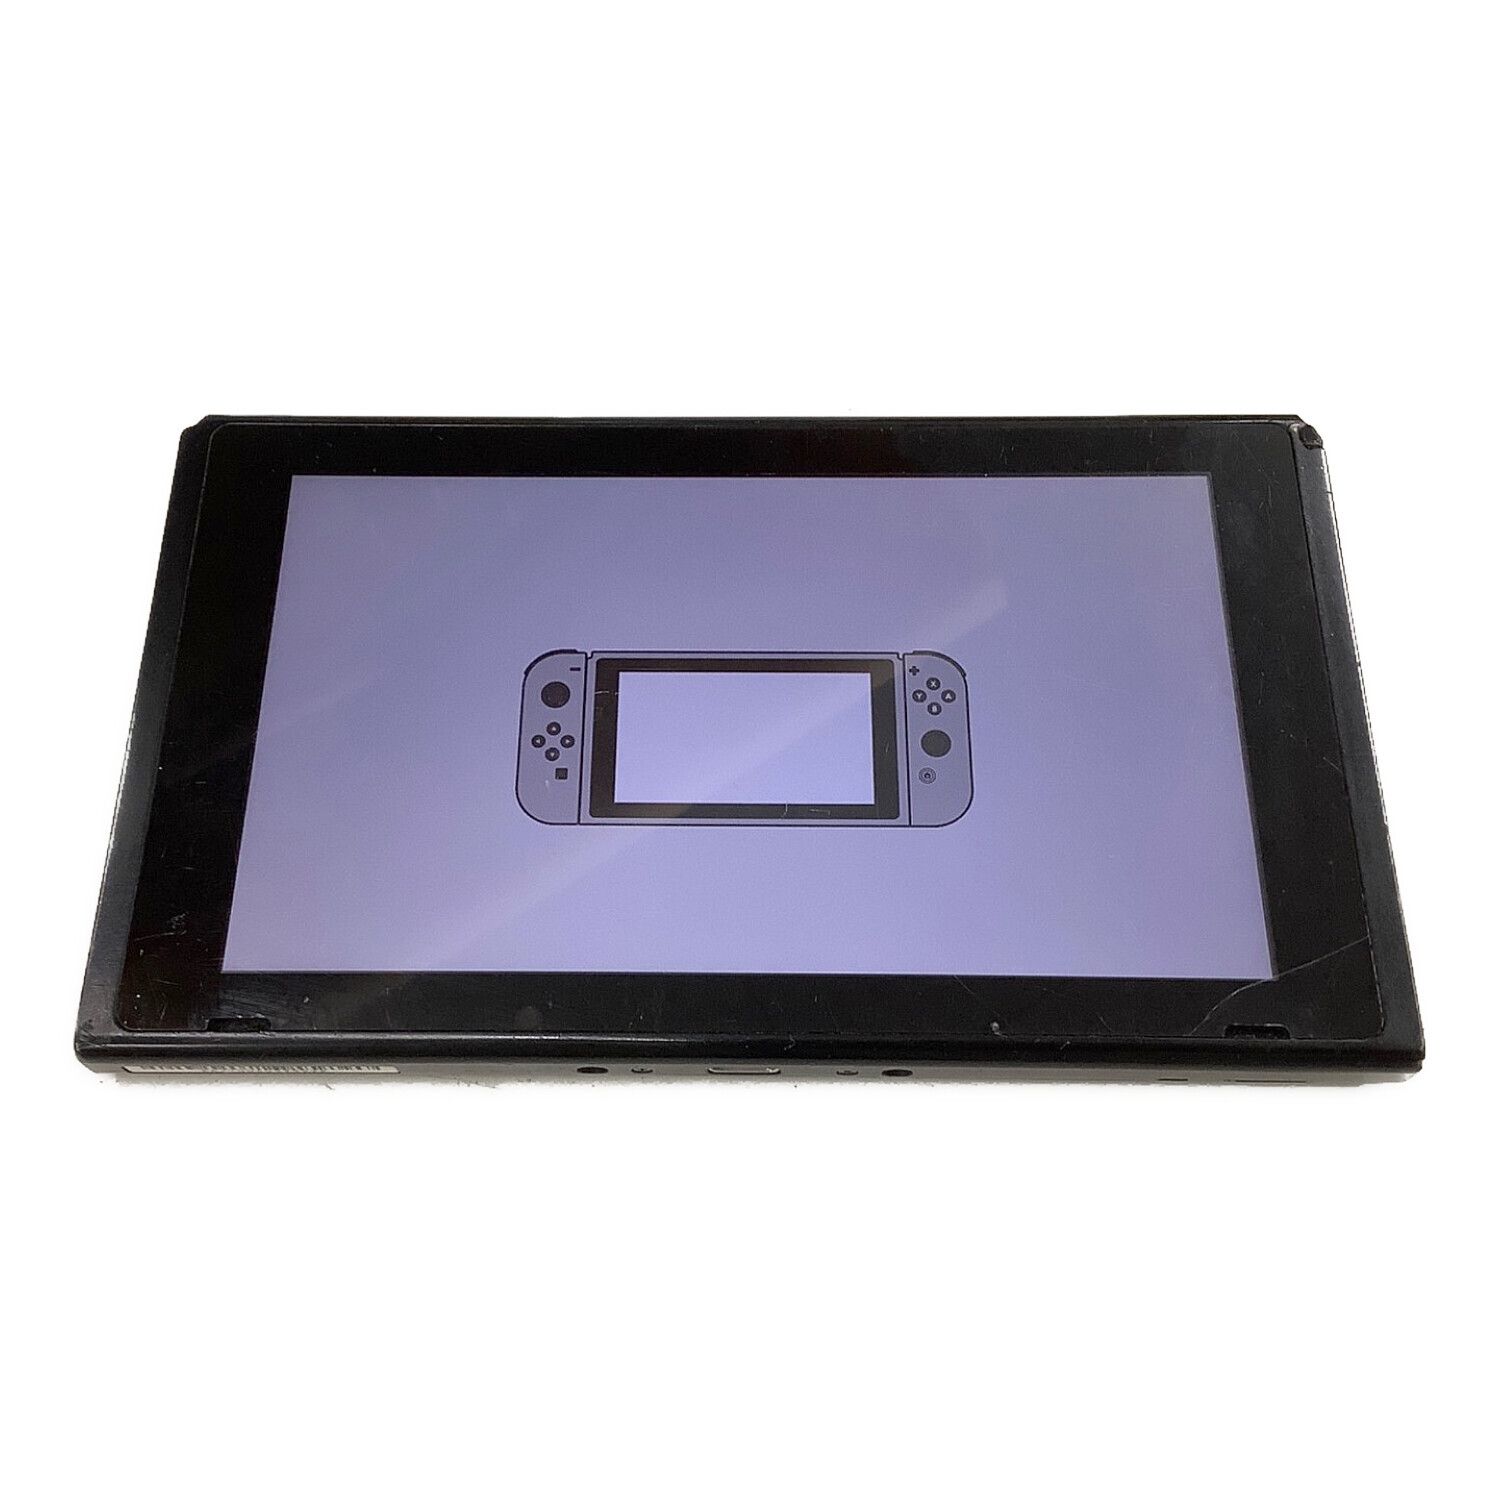 公式サイト通販 Nintendo Switch 任天堂スイッチ ジャンク品 - テレビ 